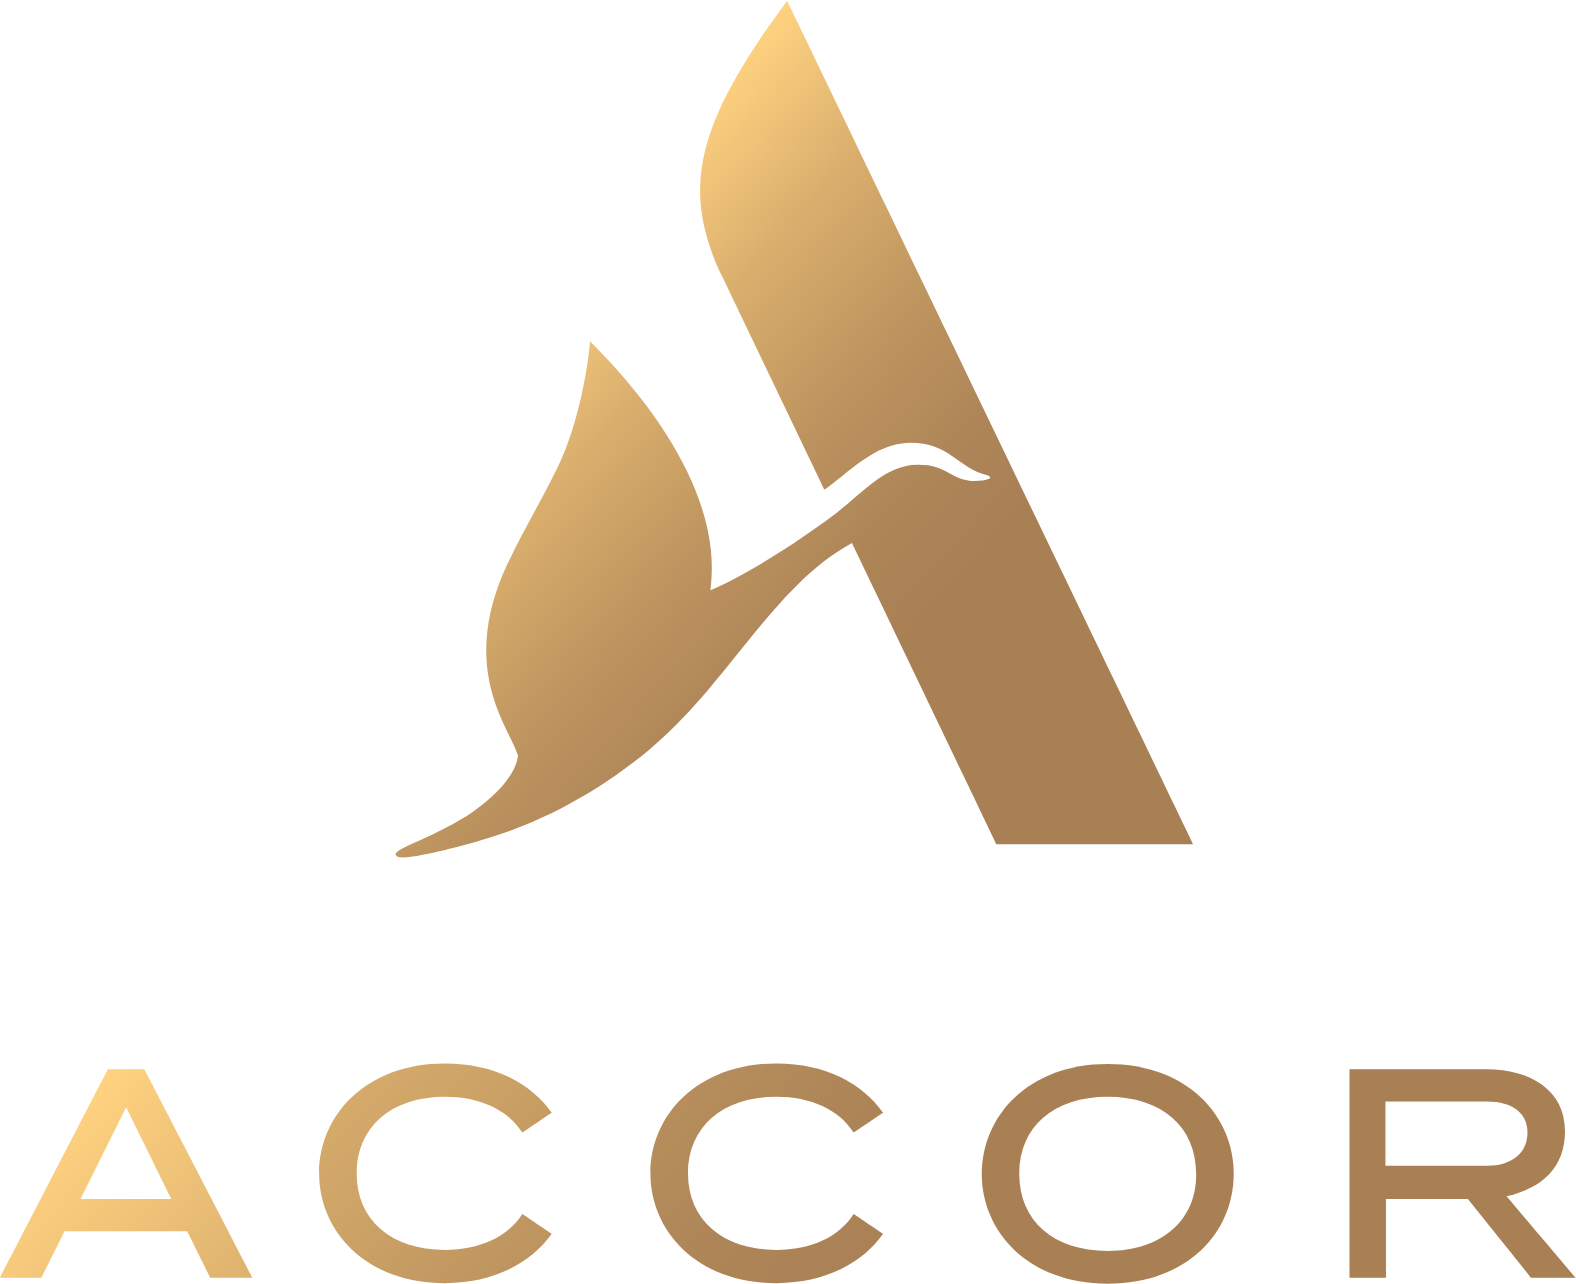 Accor logo large (transparent PNG)